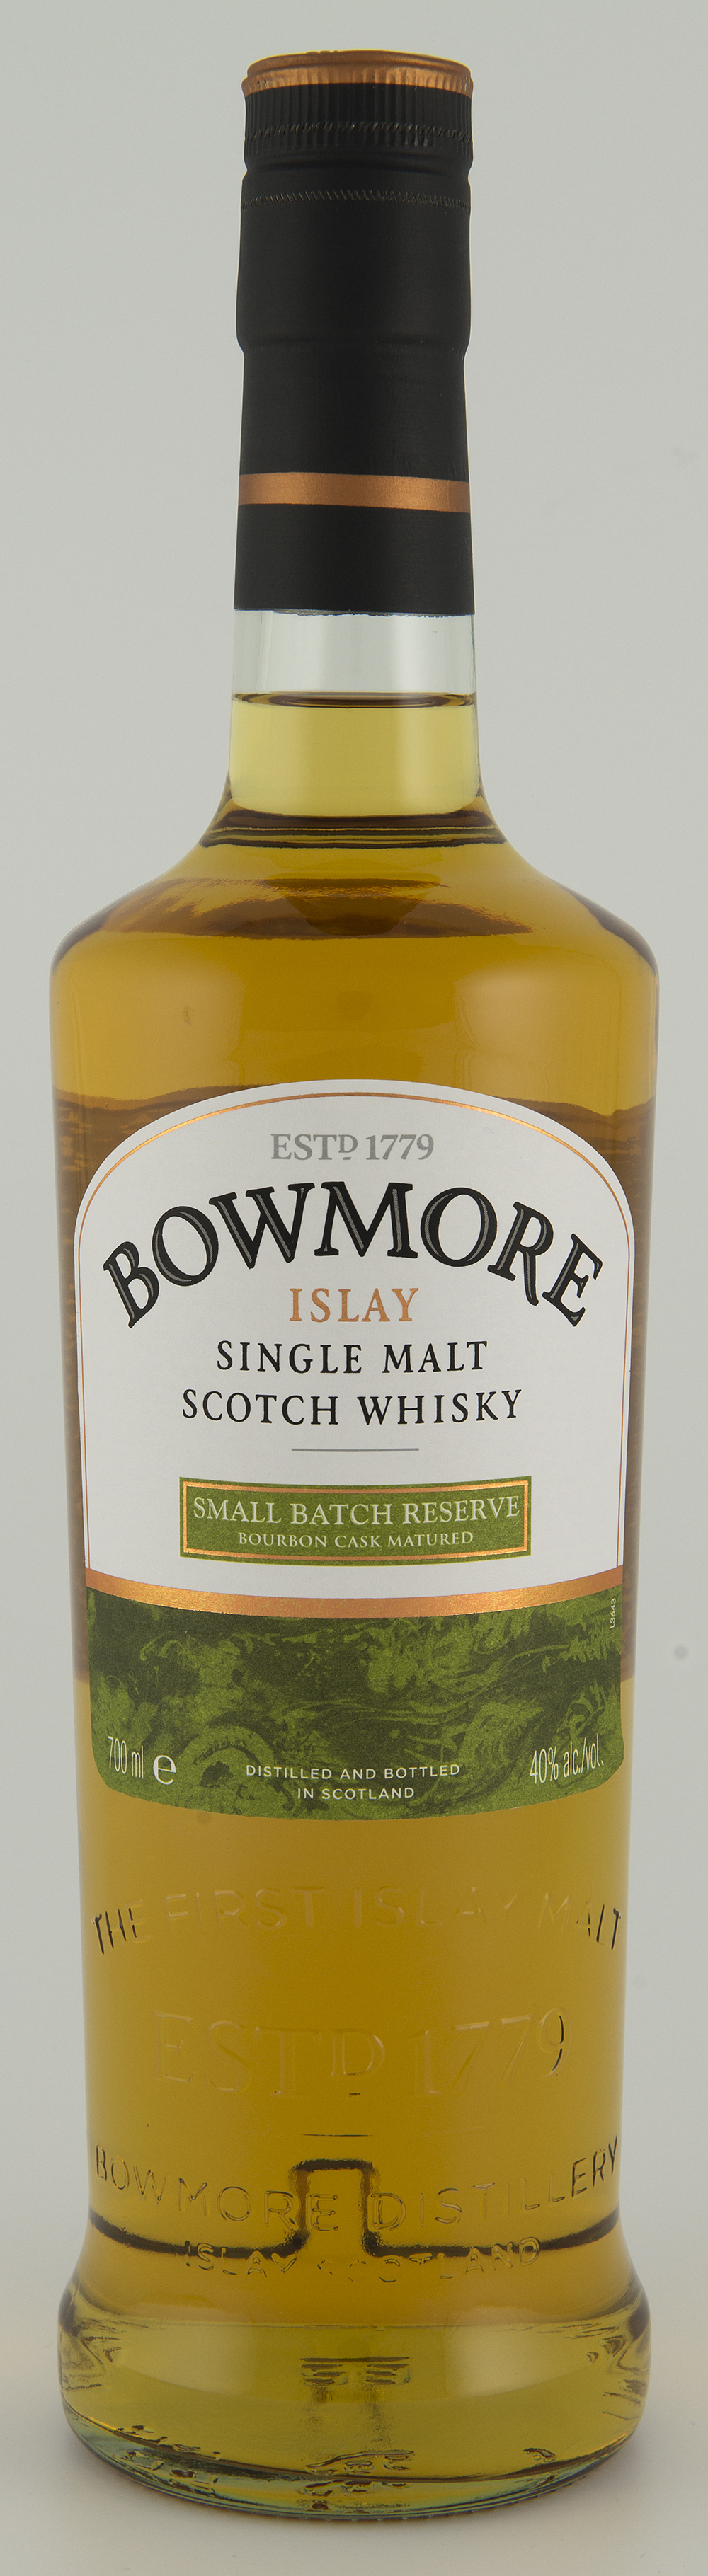 Billede: DSC_0701 Bowmore Small Batch Reserve - bourbon cask matured.jpg